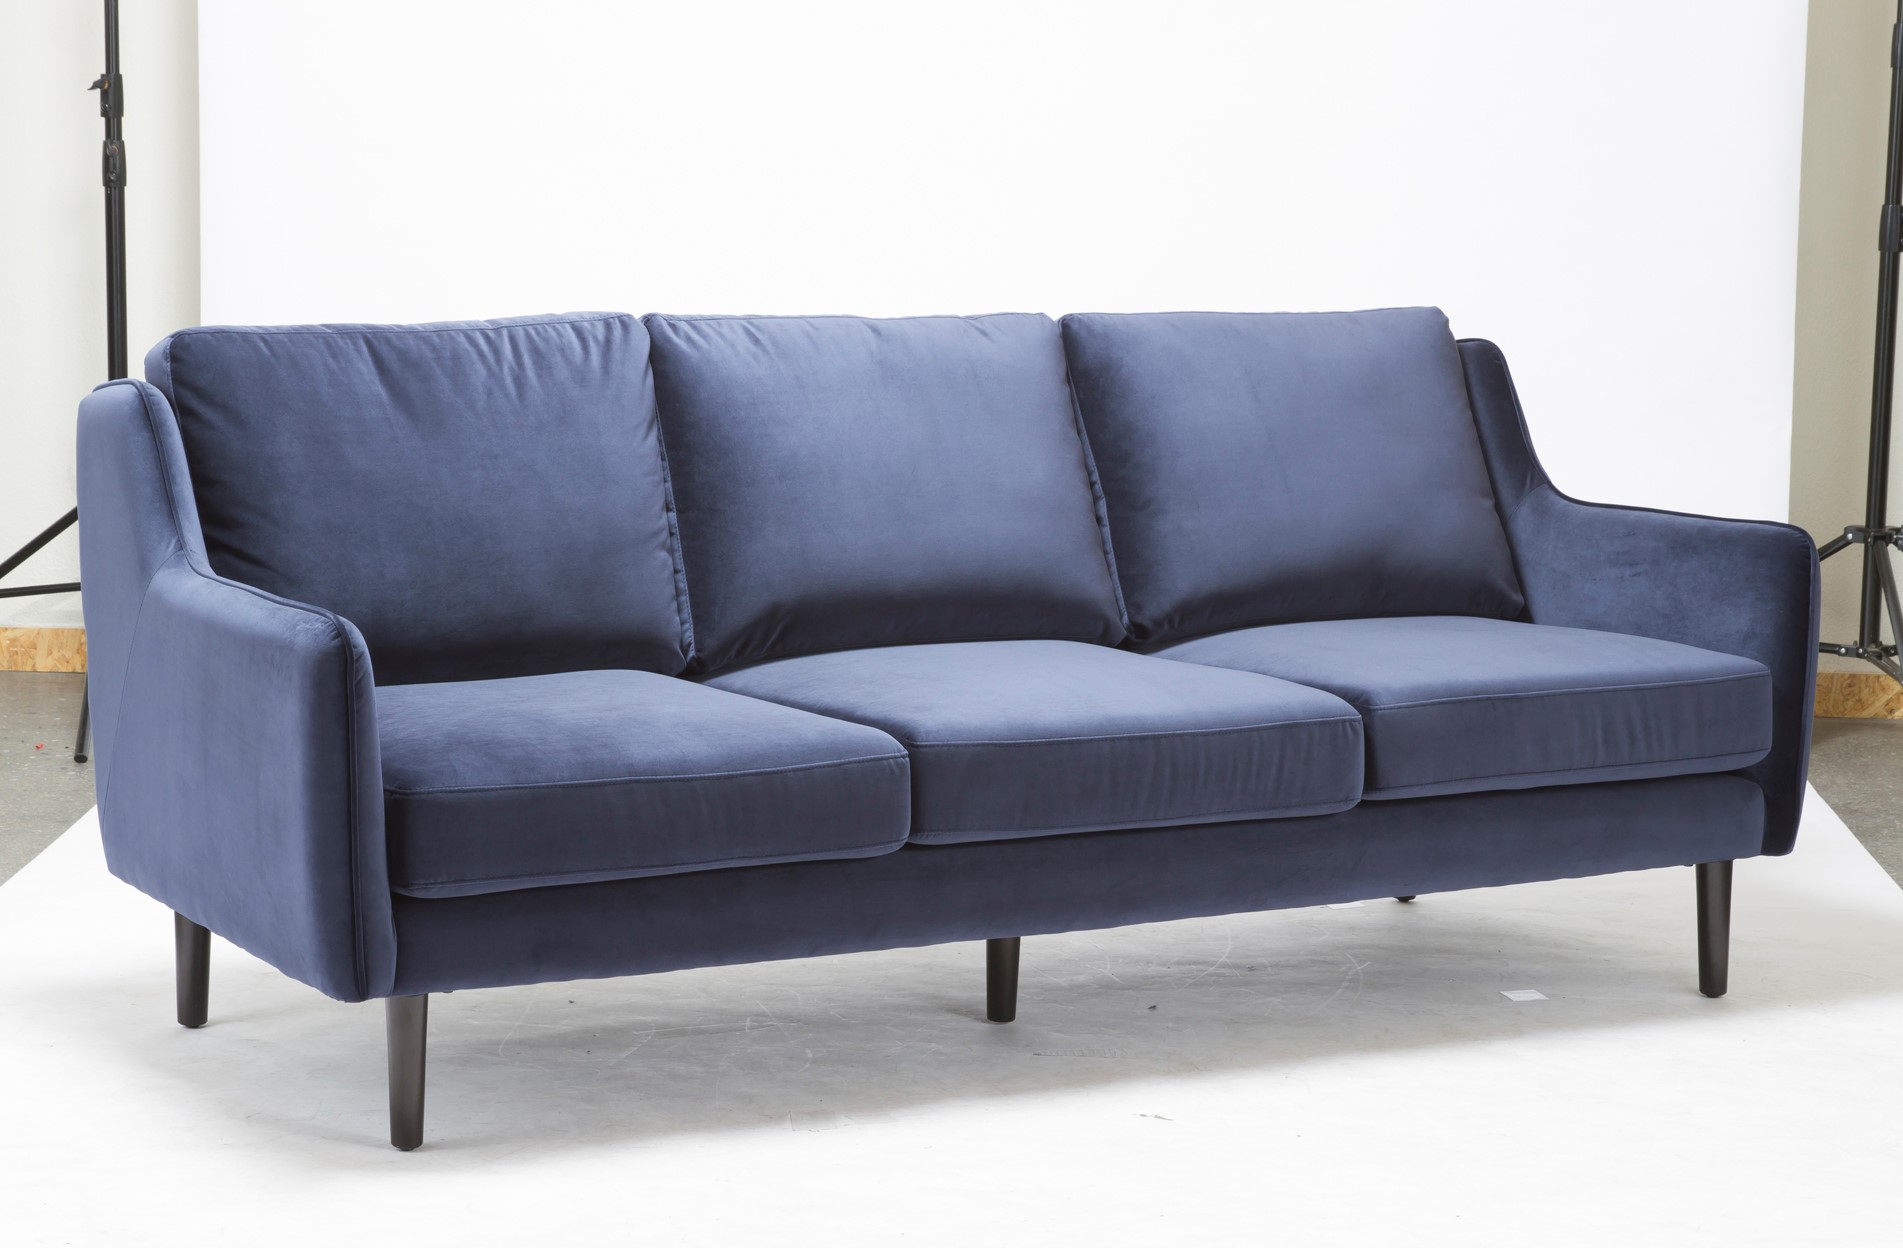 ຜະ​ລິດ​ຕະ​ພັນ sofa ລະ​ຫວ່າງ​ກາງ​ຫາ​ສູງ​ສຸດ​ຄອບ​ຄອງ​ປະ​ລິ​ມານ​ຕົ້ນ​ຕໍ​ທີ່ US $ 1,000 ~ 1999